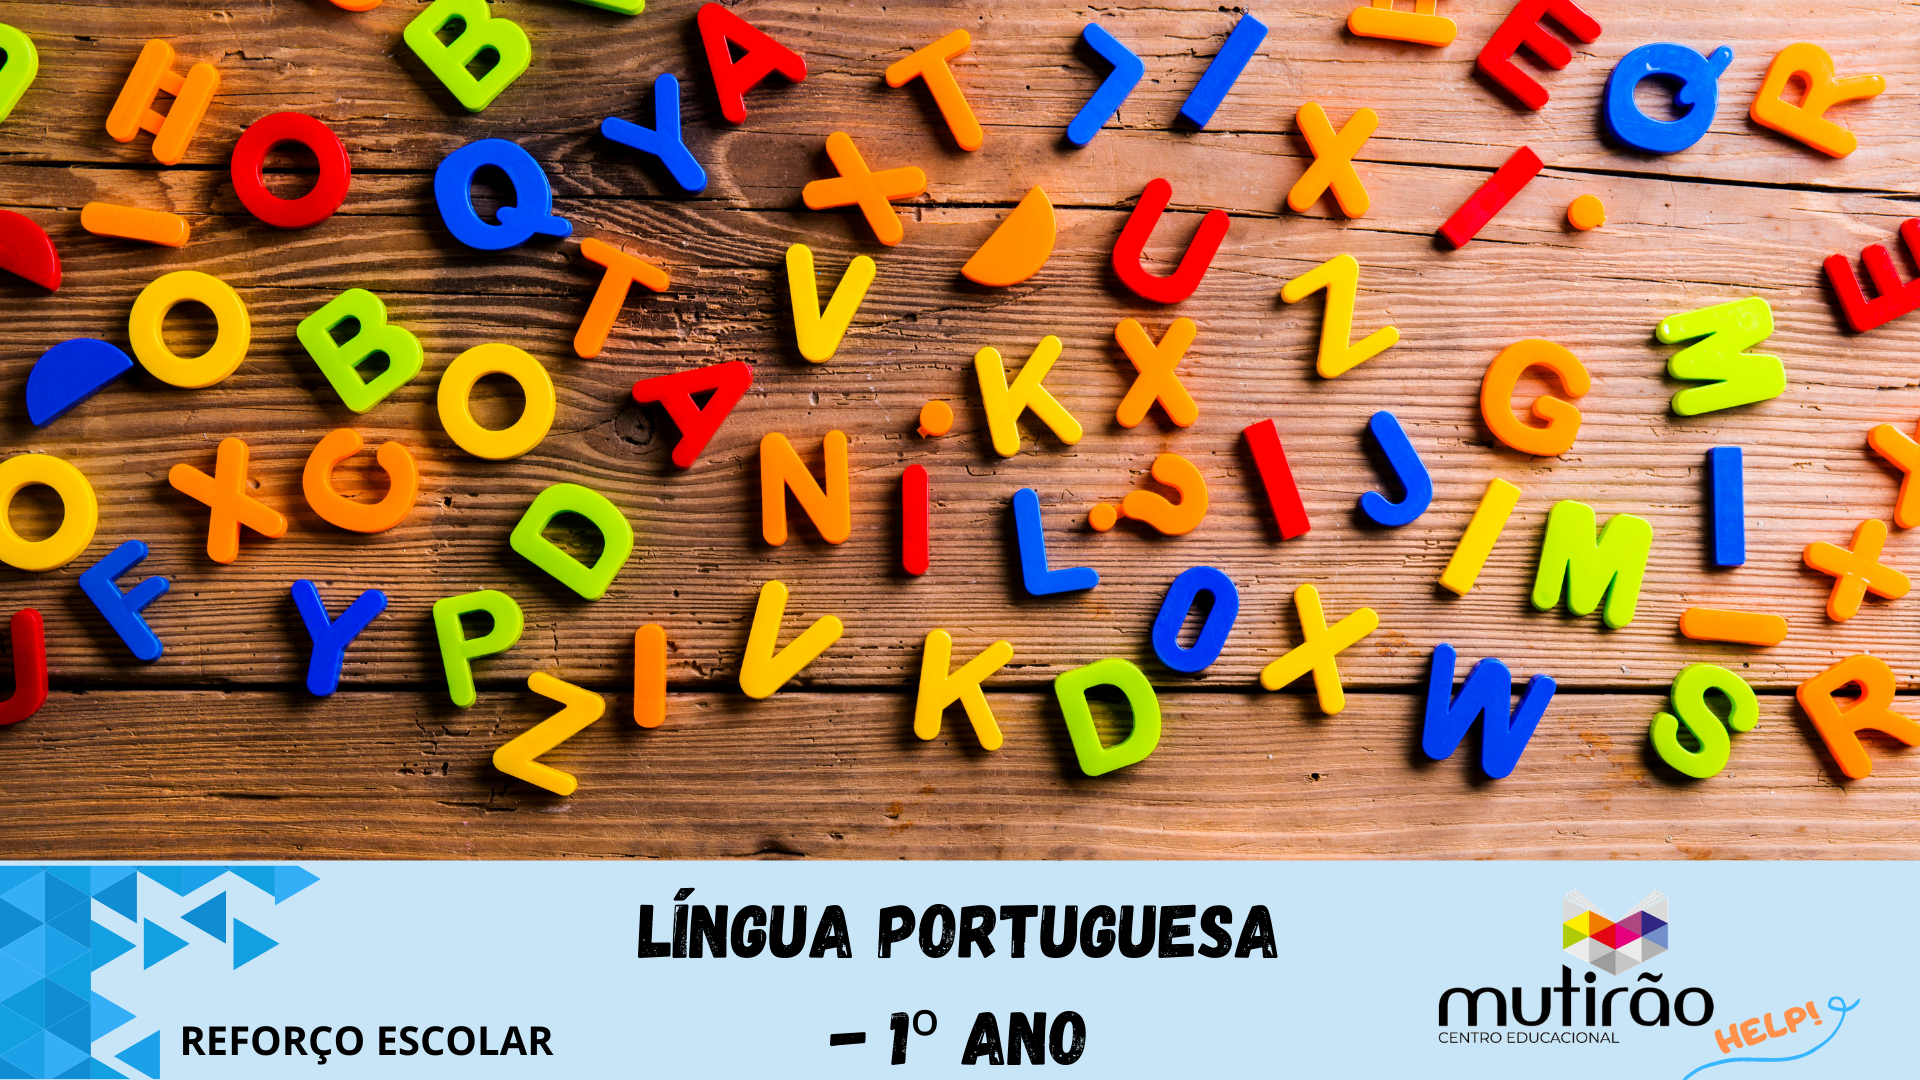 Mutiro Help ! Reforo Escolar 1 ano - LNGUA PORTUGUESA